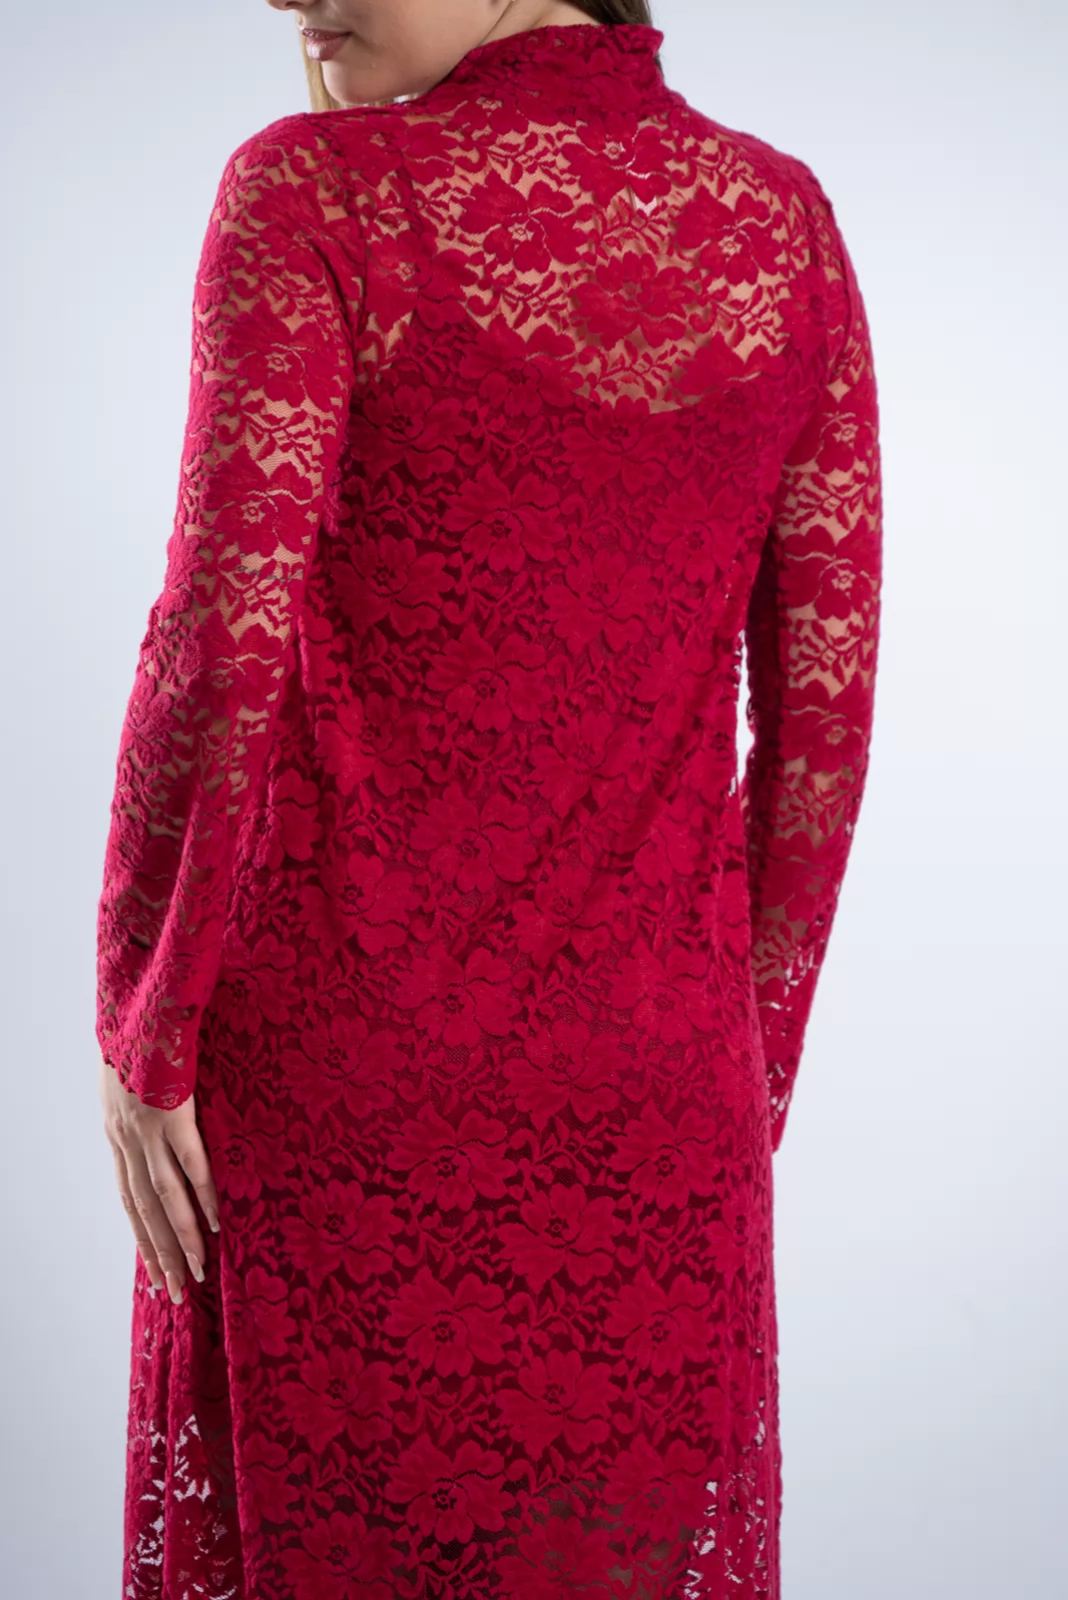 Φόρεμα Δαντέλα Διαφάνεια Κόκκινο